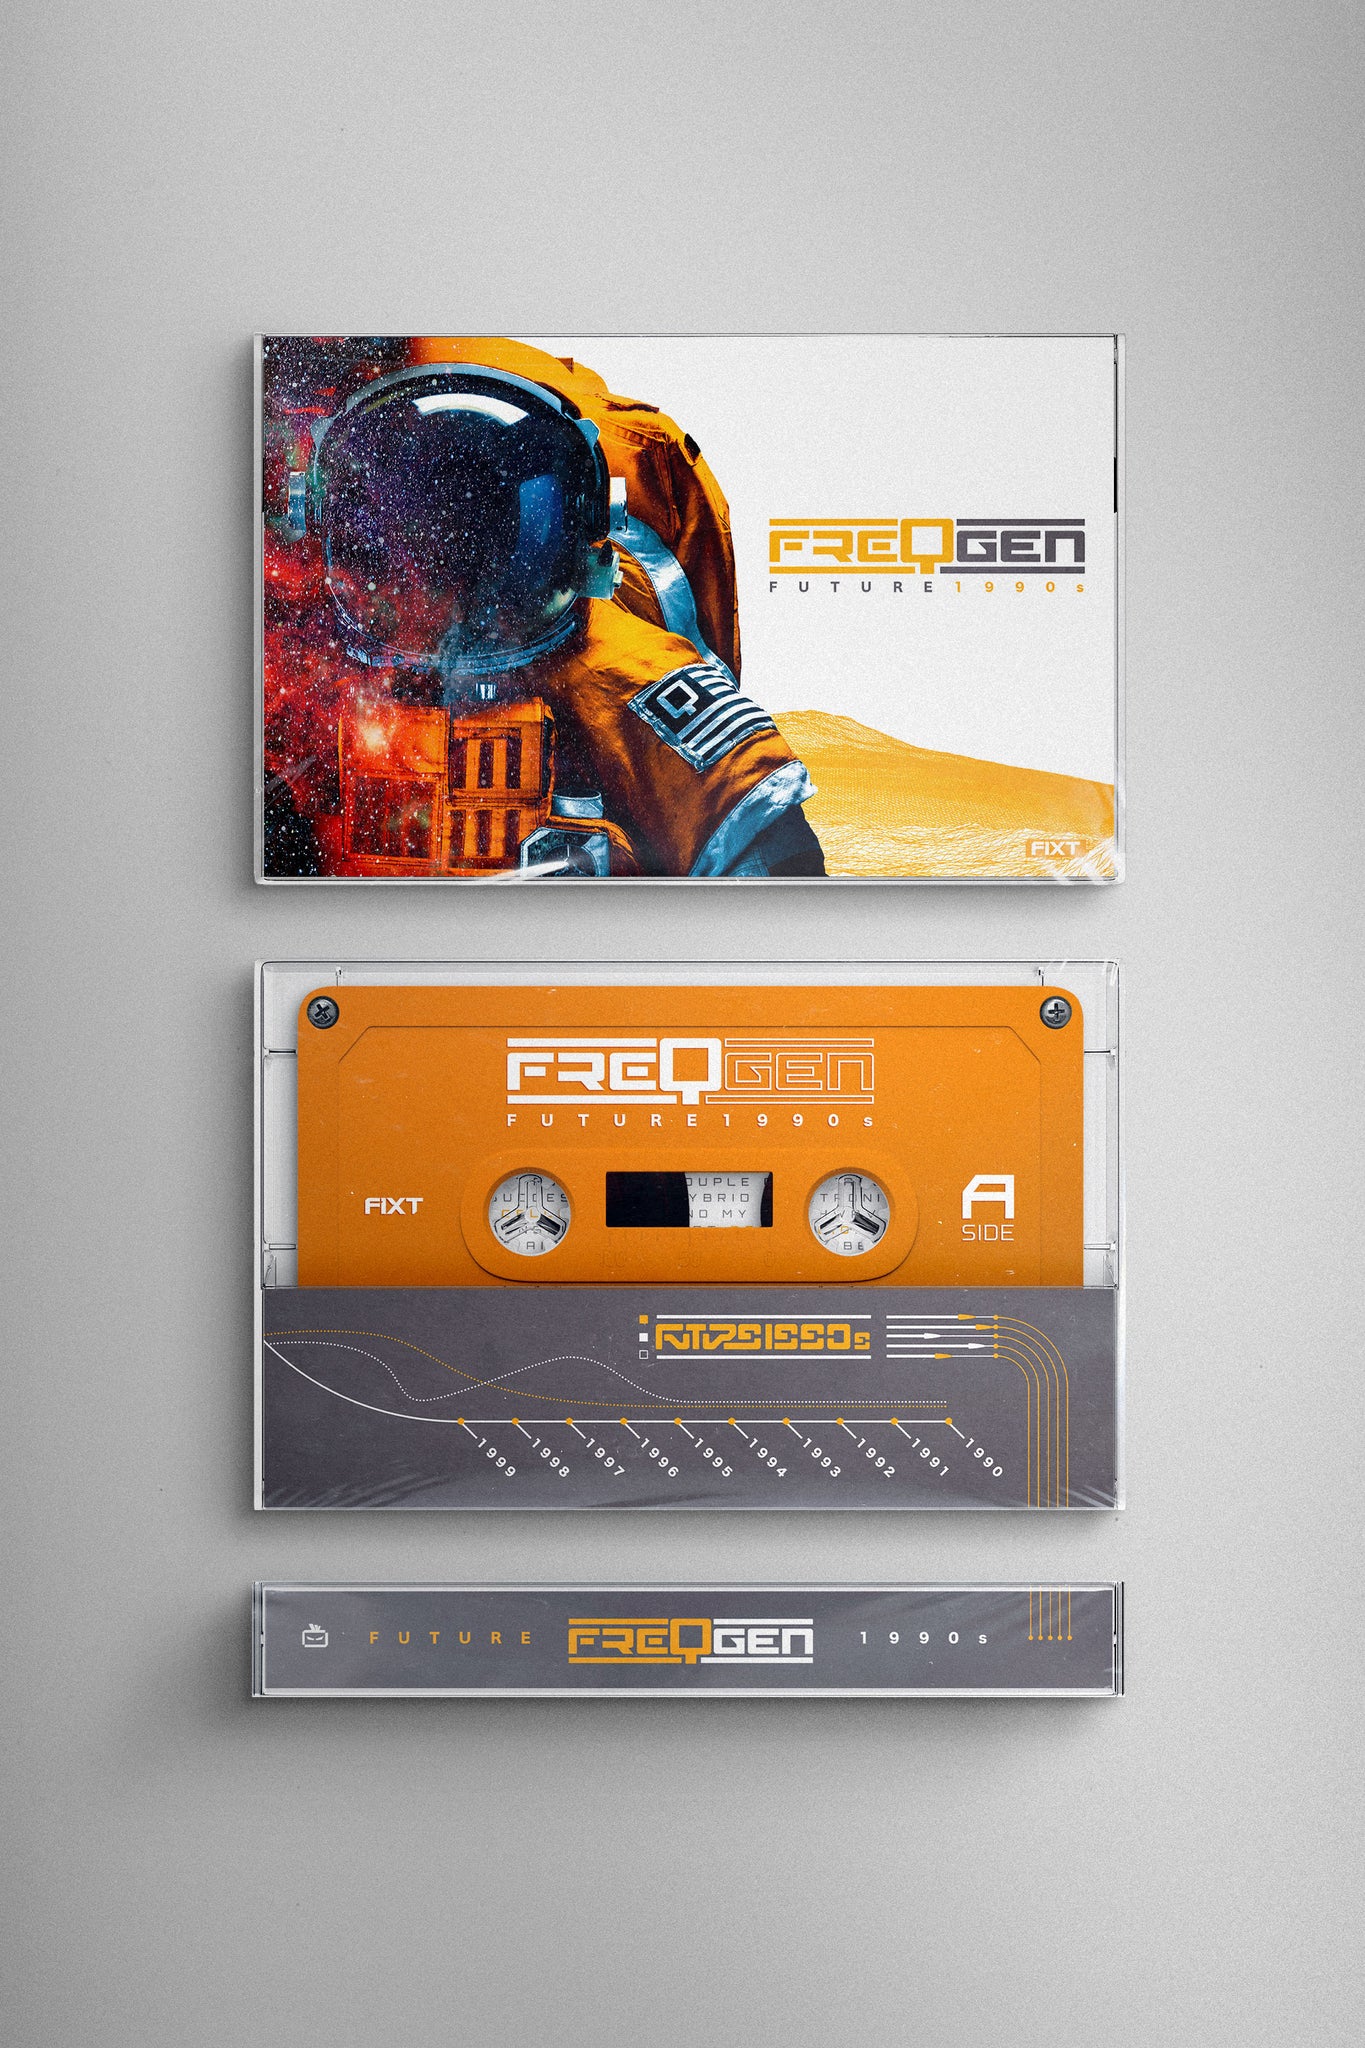 FreqGen - Future 1990s [Limited Edition Cassette]